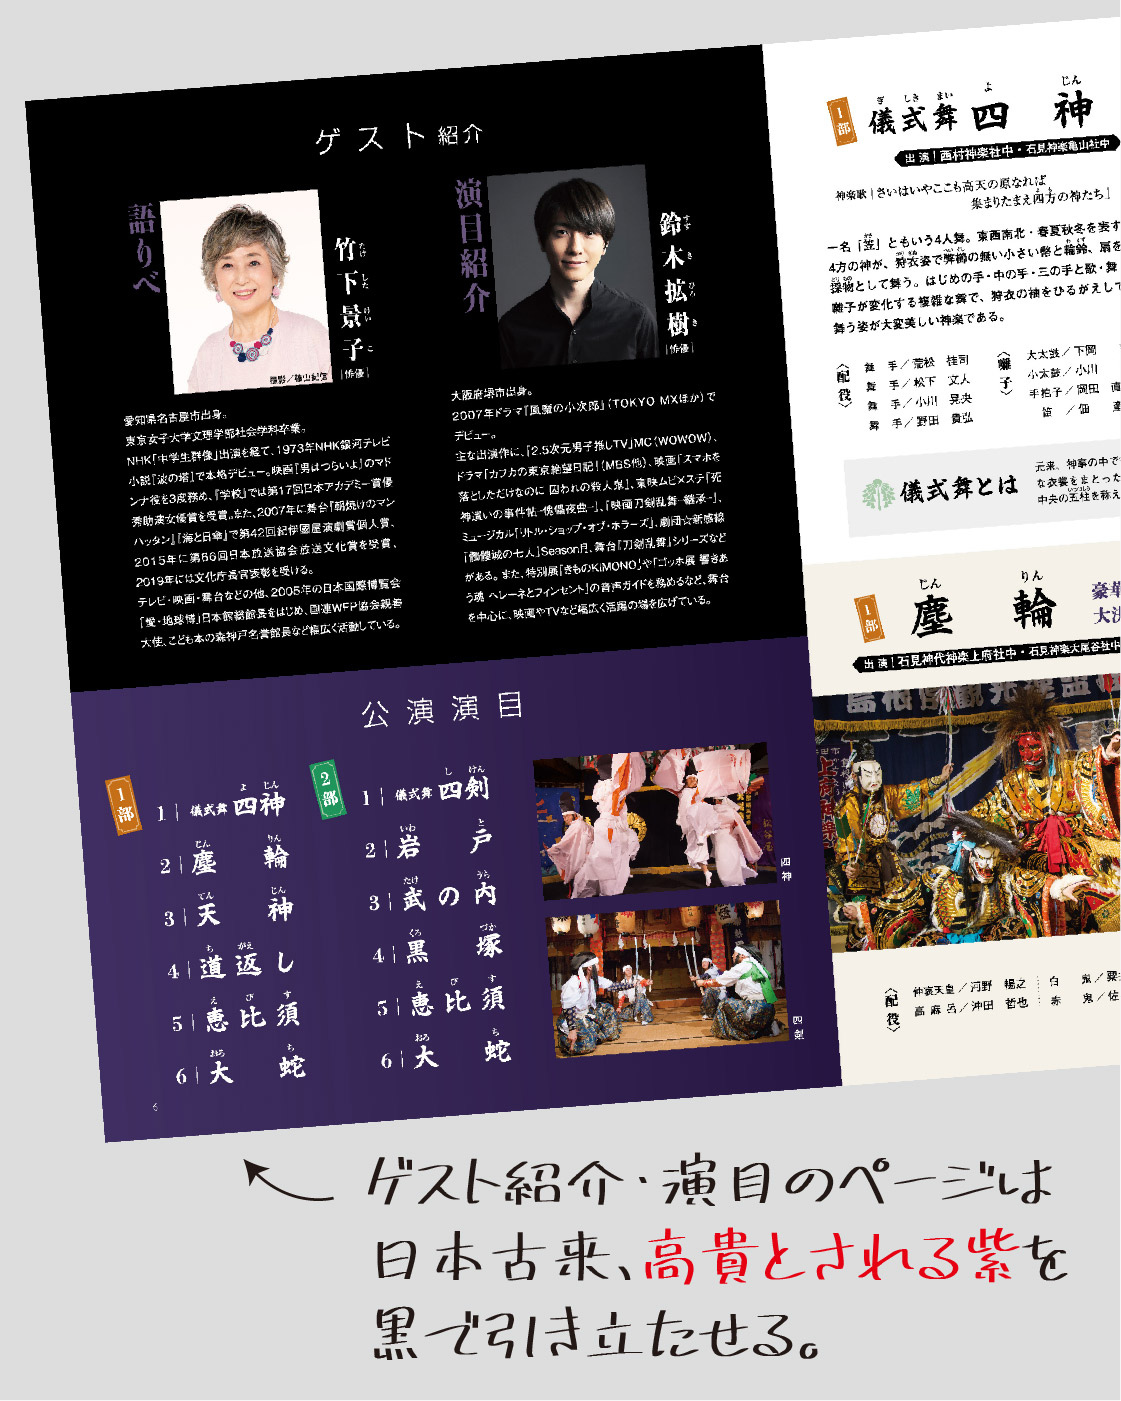 ゲスト紹介・演目のページは 日本古来、高貴とされる紫を 黒で引き立たせる。